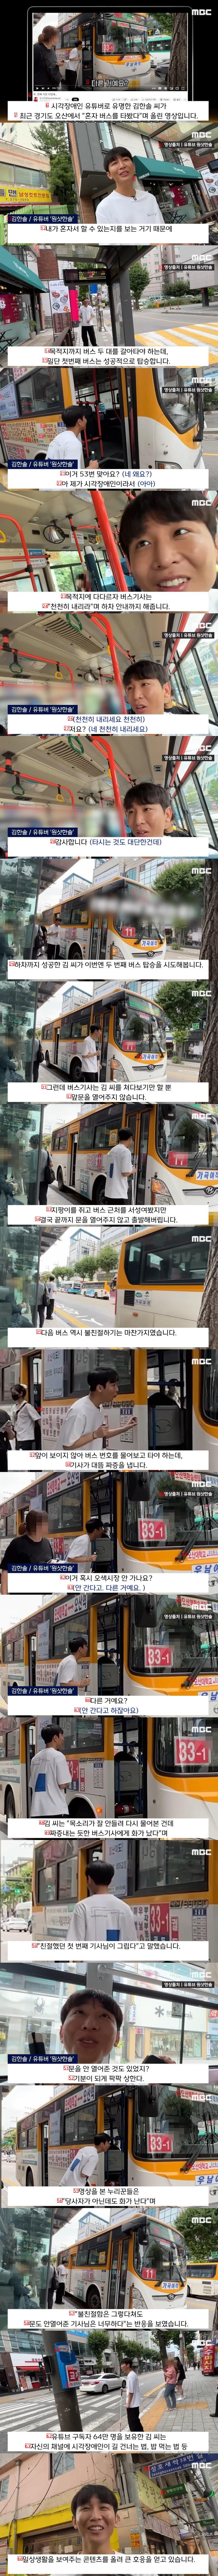 경기도에서 혼자 버스타기시도한 시각장애인 유튜버